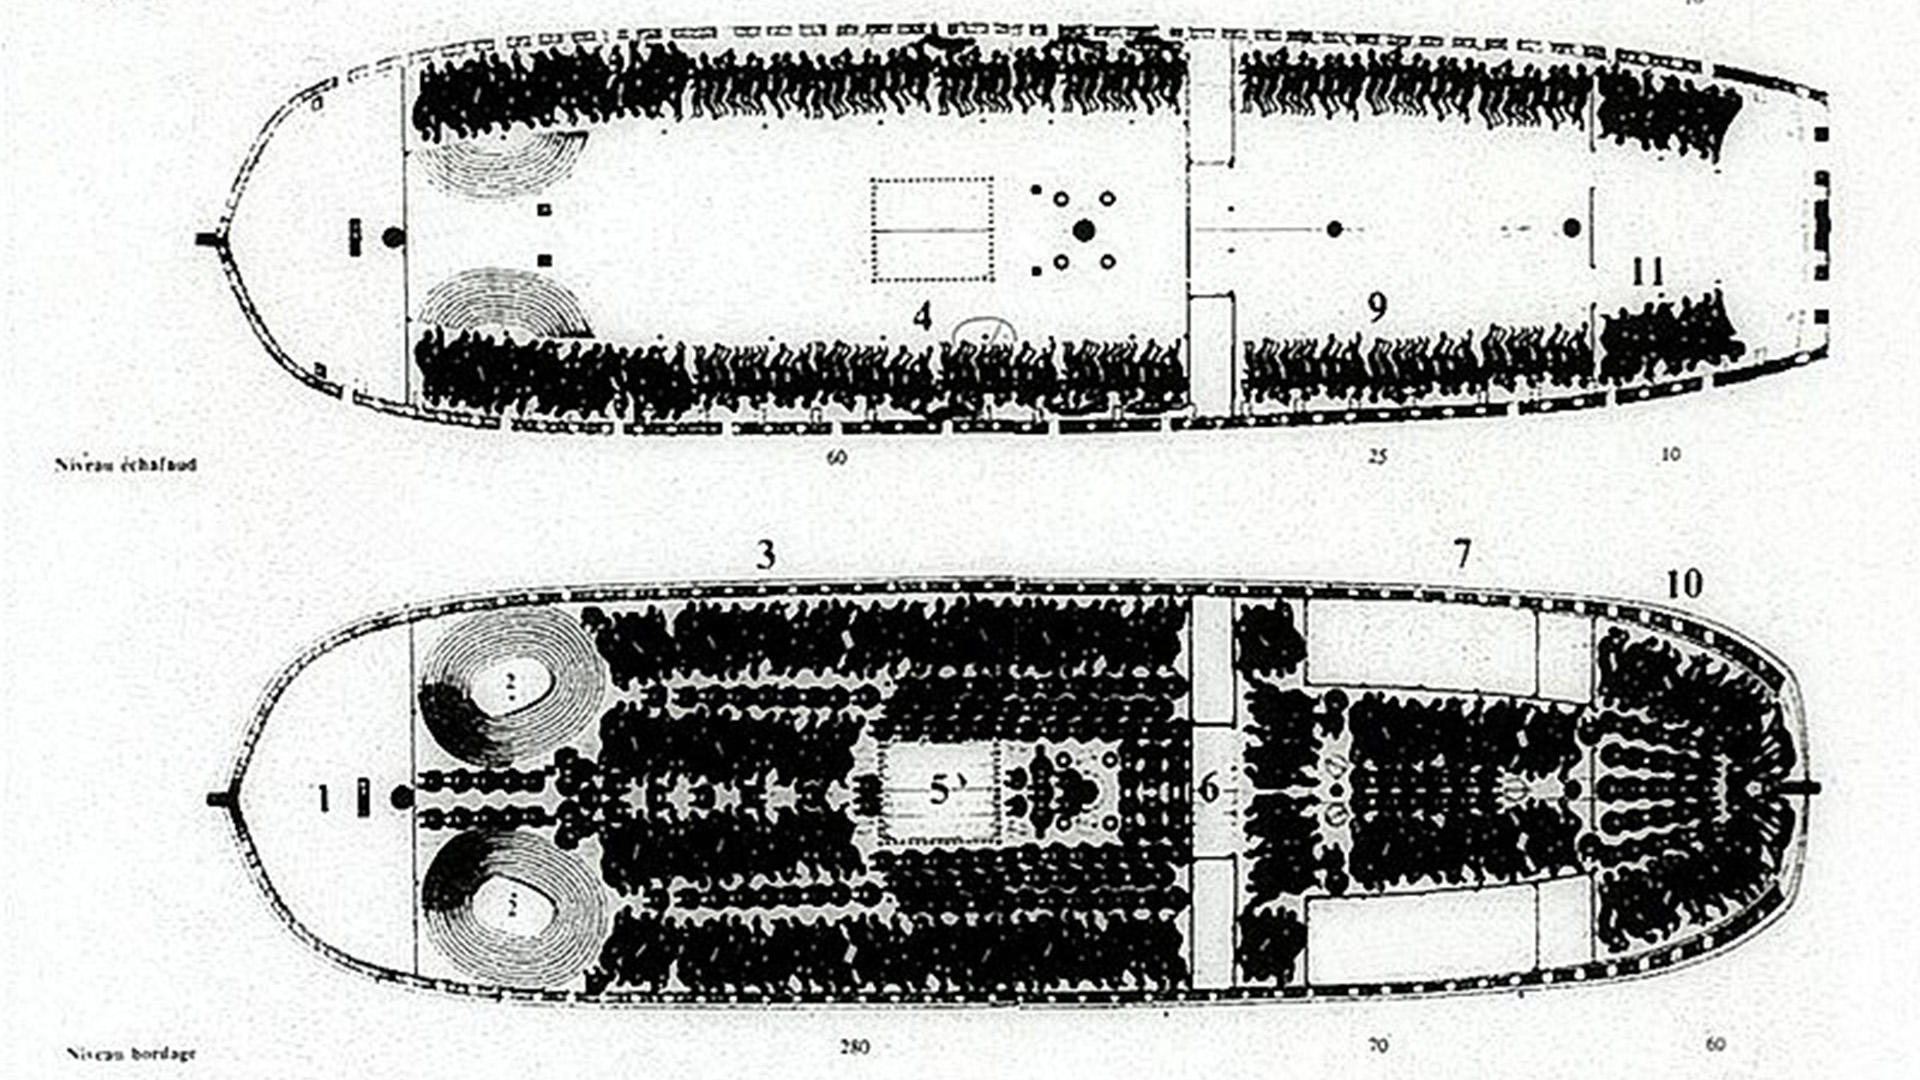 Konstruktionszeichnung der Decks eines zeitgenössischen Sklavenschiffs. Menschen wurden wie Ware gestapelt. Es wurde mit "50% Verlust" beim Transport kalkuliert. (© gemeinfrei)